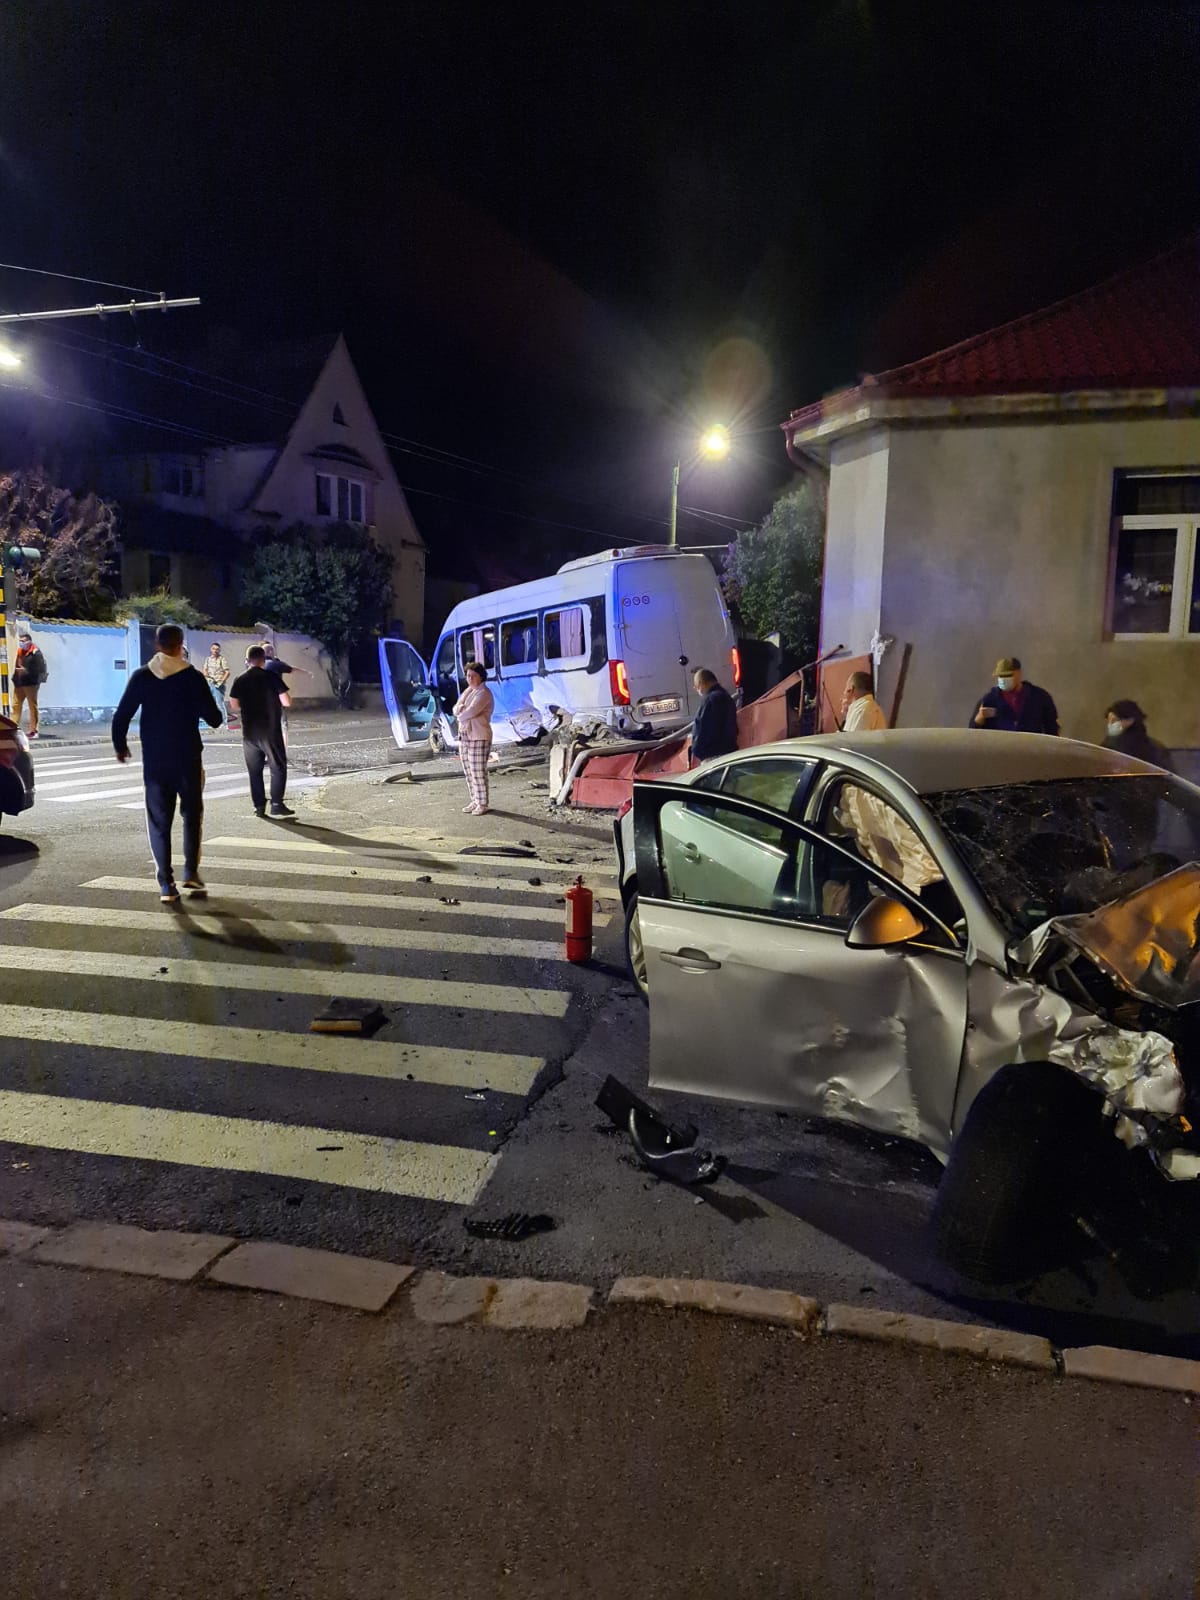 (Foto) Accident Brașov. 3 răniți, microbuz lovit în intersecție. În mașină ar fi fost 3 băieți care păreau drogați sau beți 4